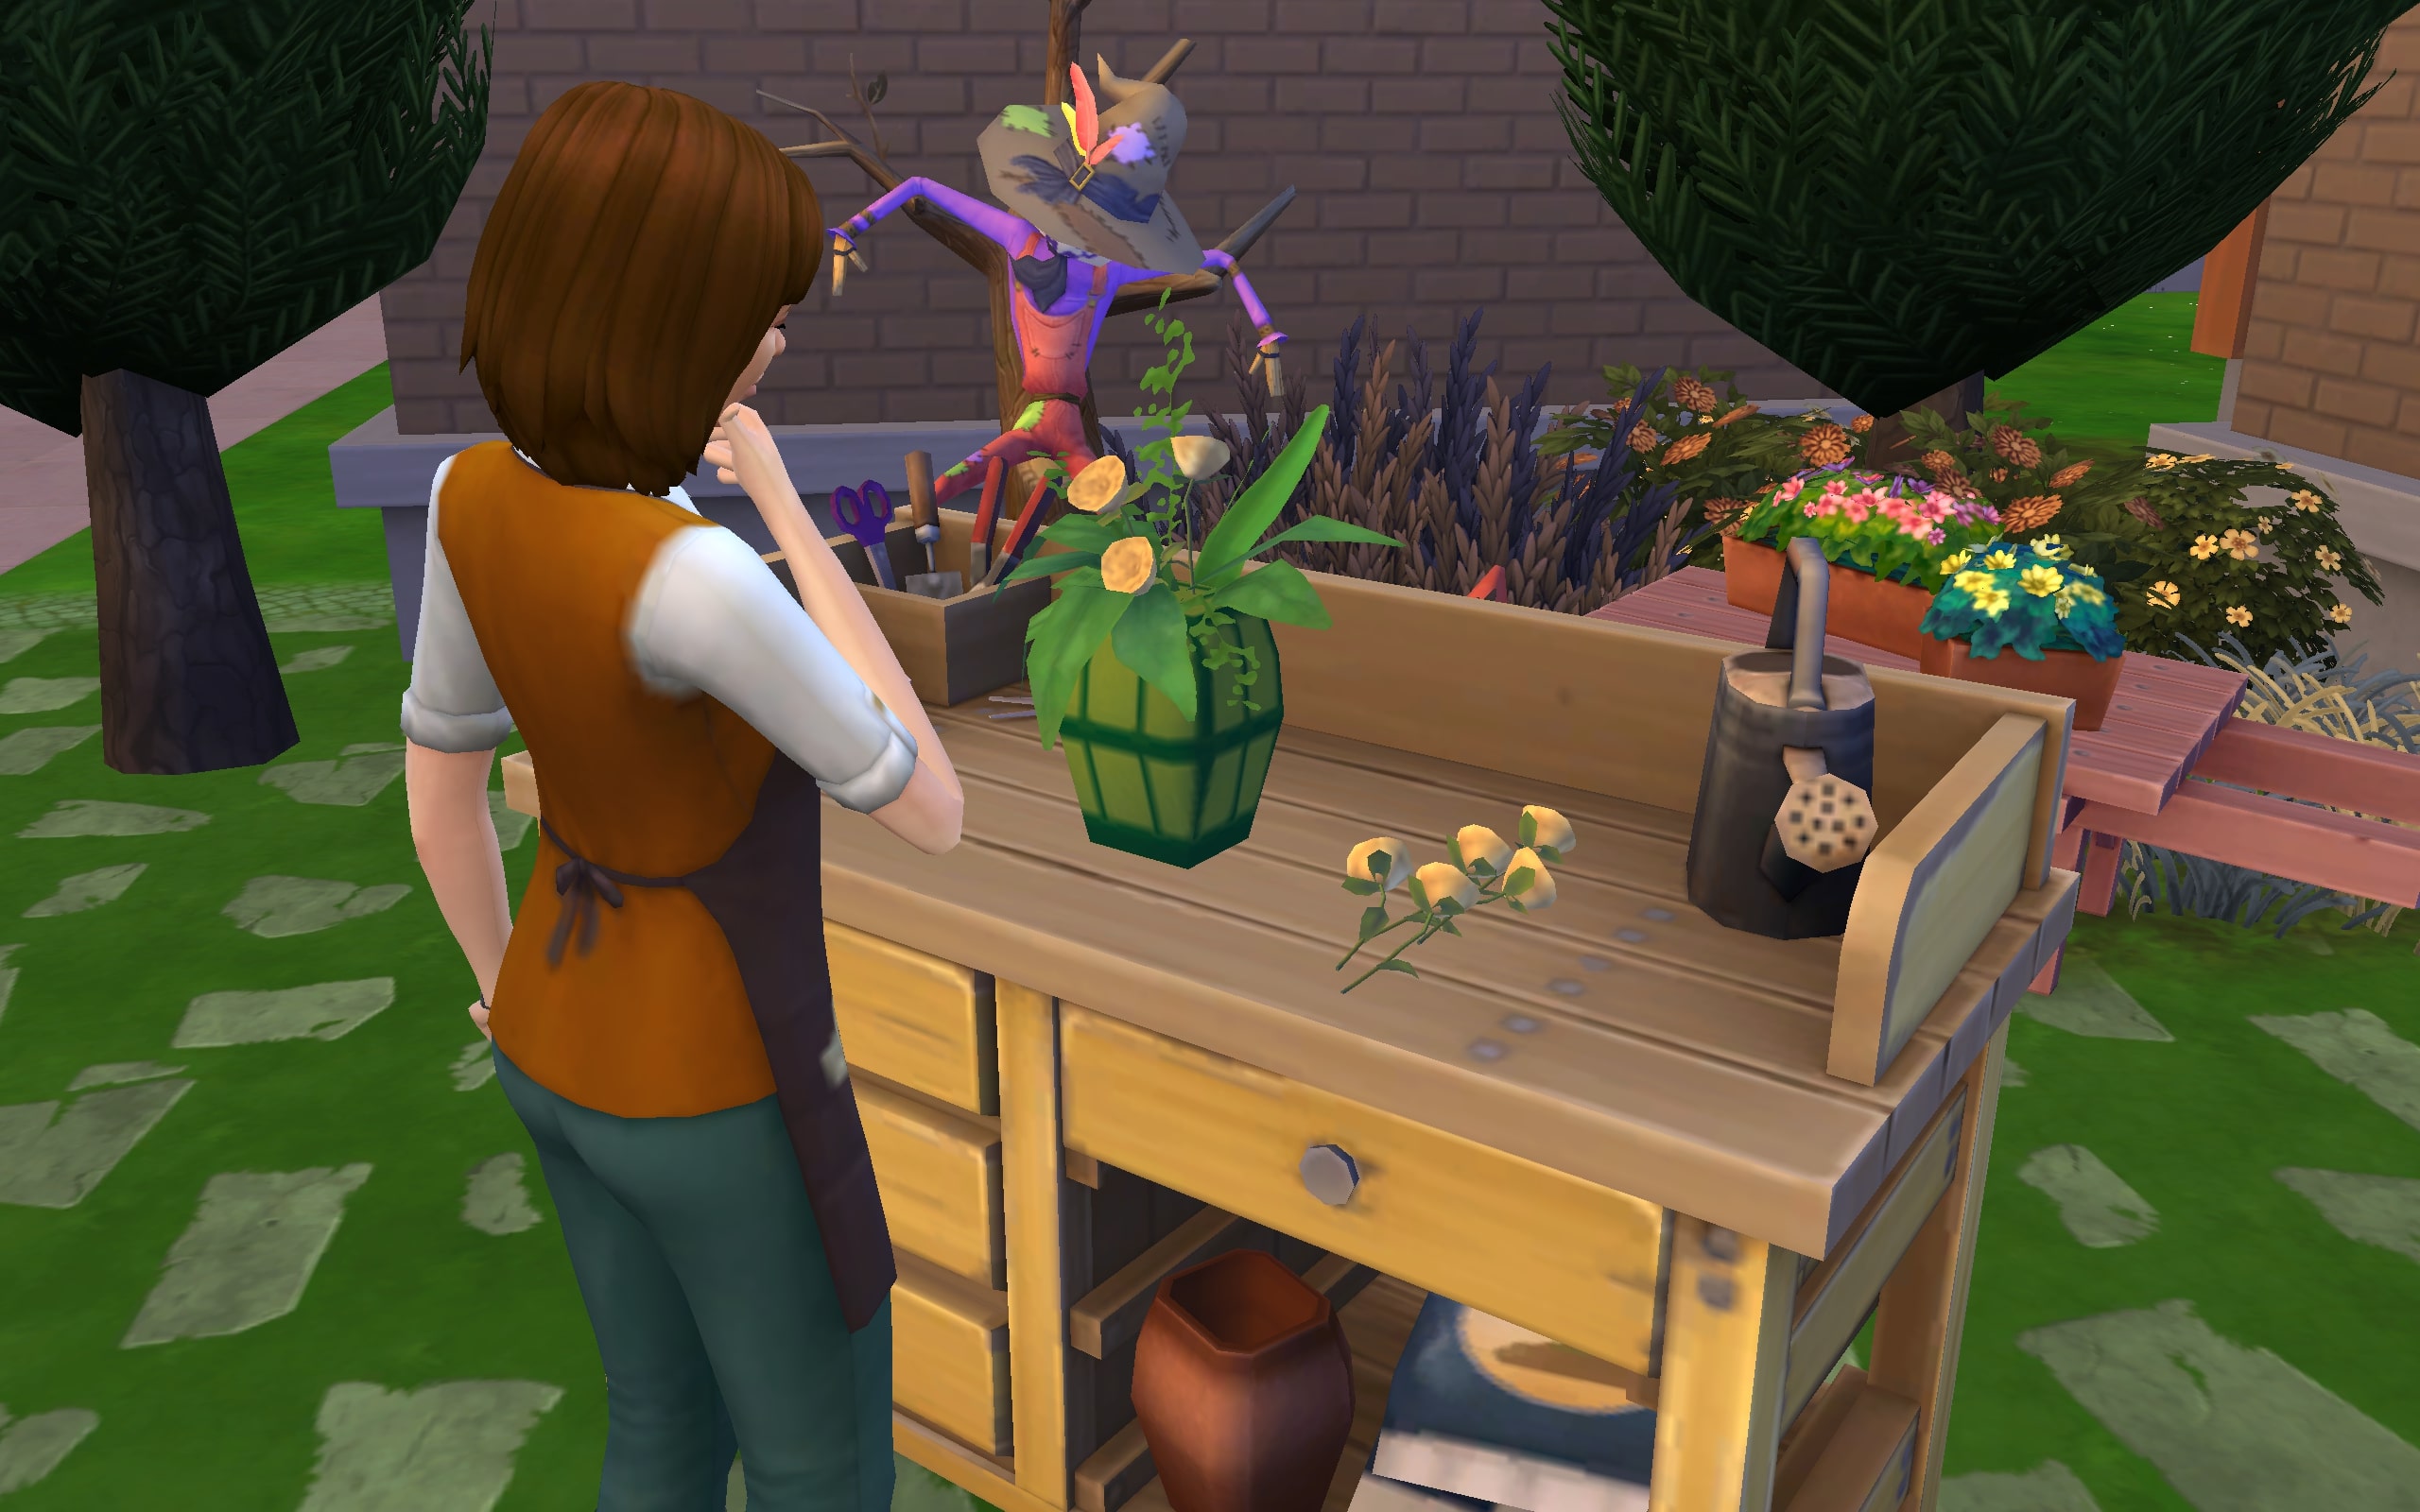 A Florist Sim arranging a vase of flowers.